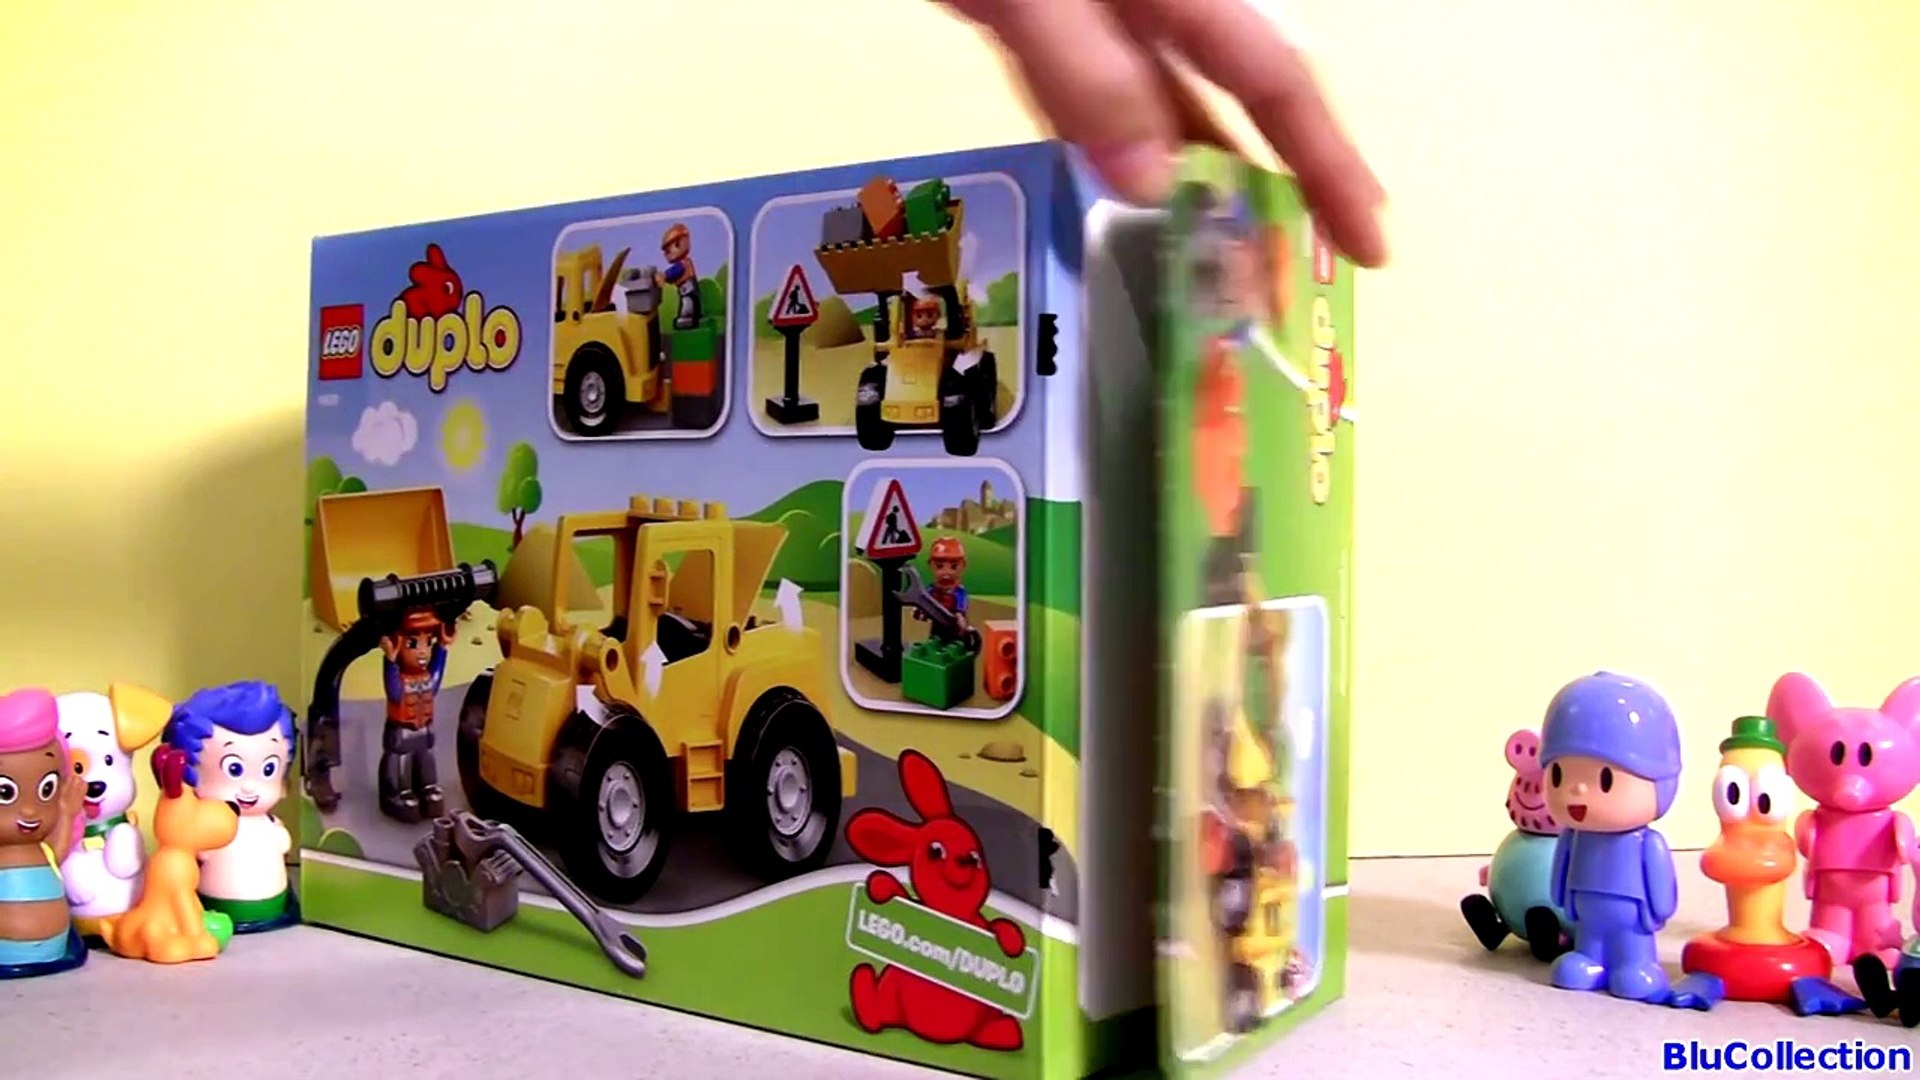 Lego Duplo POCOYO & Peppa Pig Big Loader Mega Construction Blocks  Nickelodeon La Excavadora - video Dailymotion